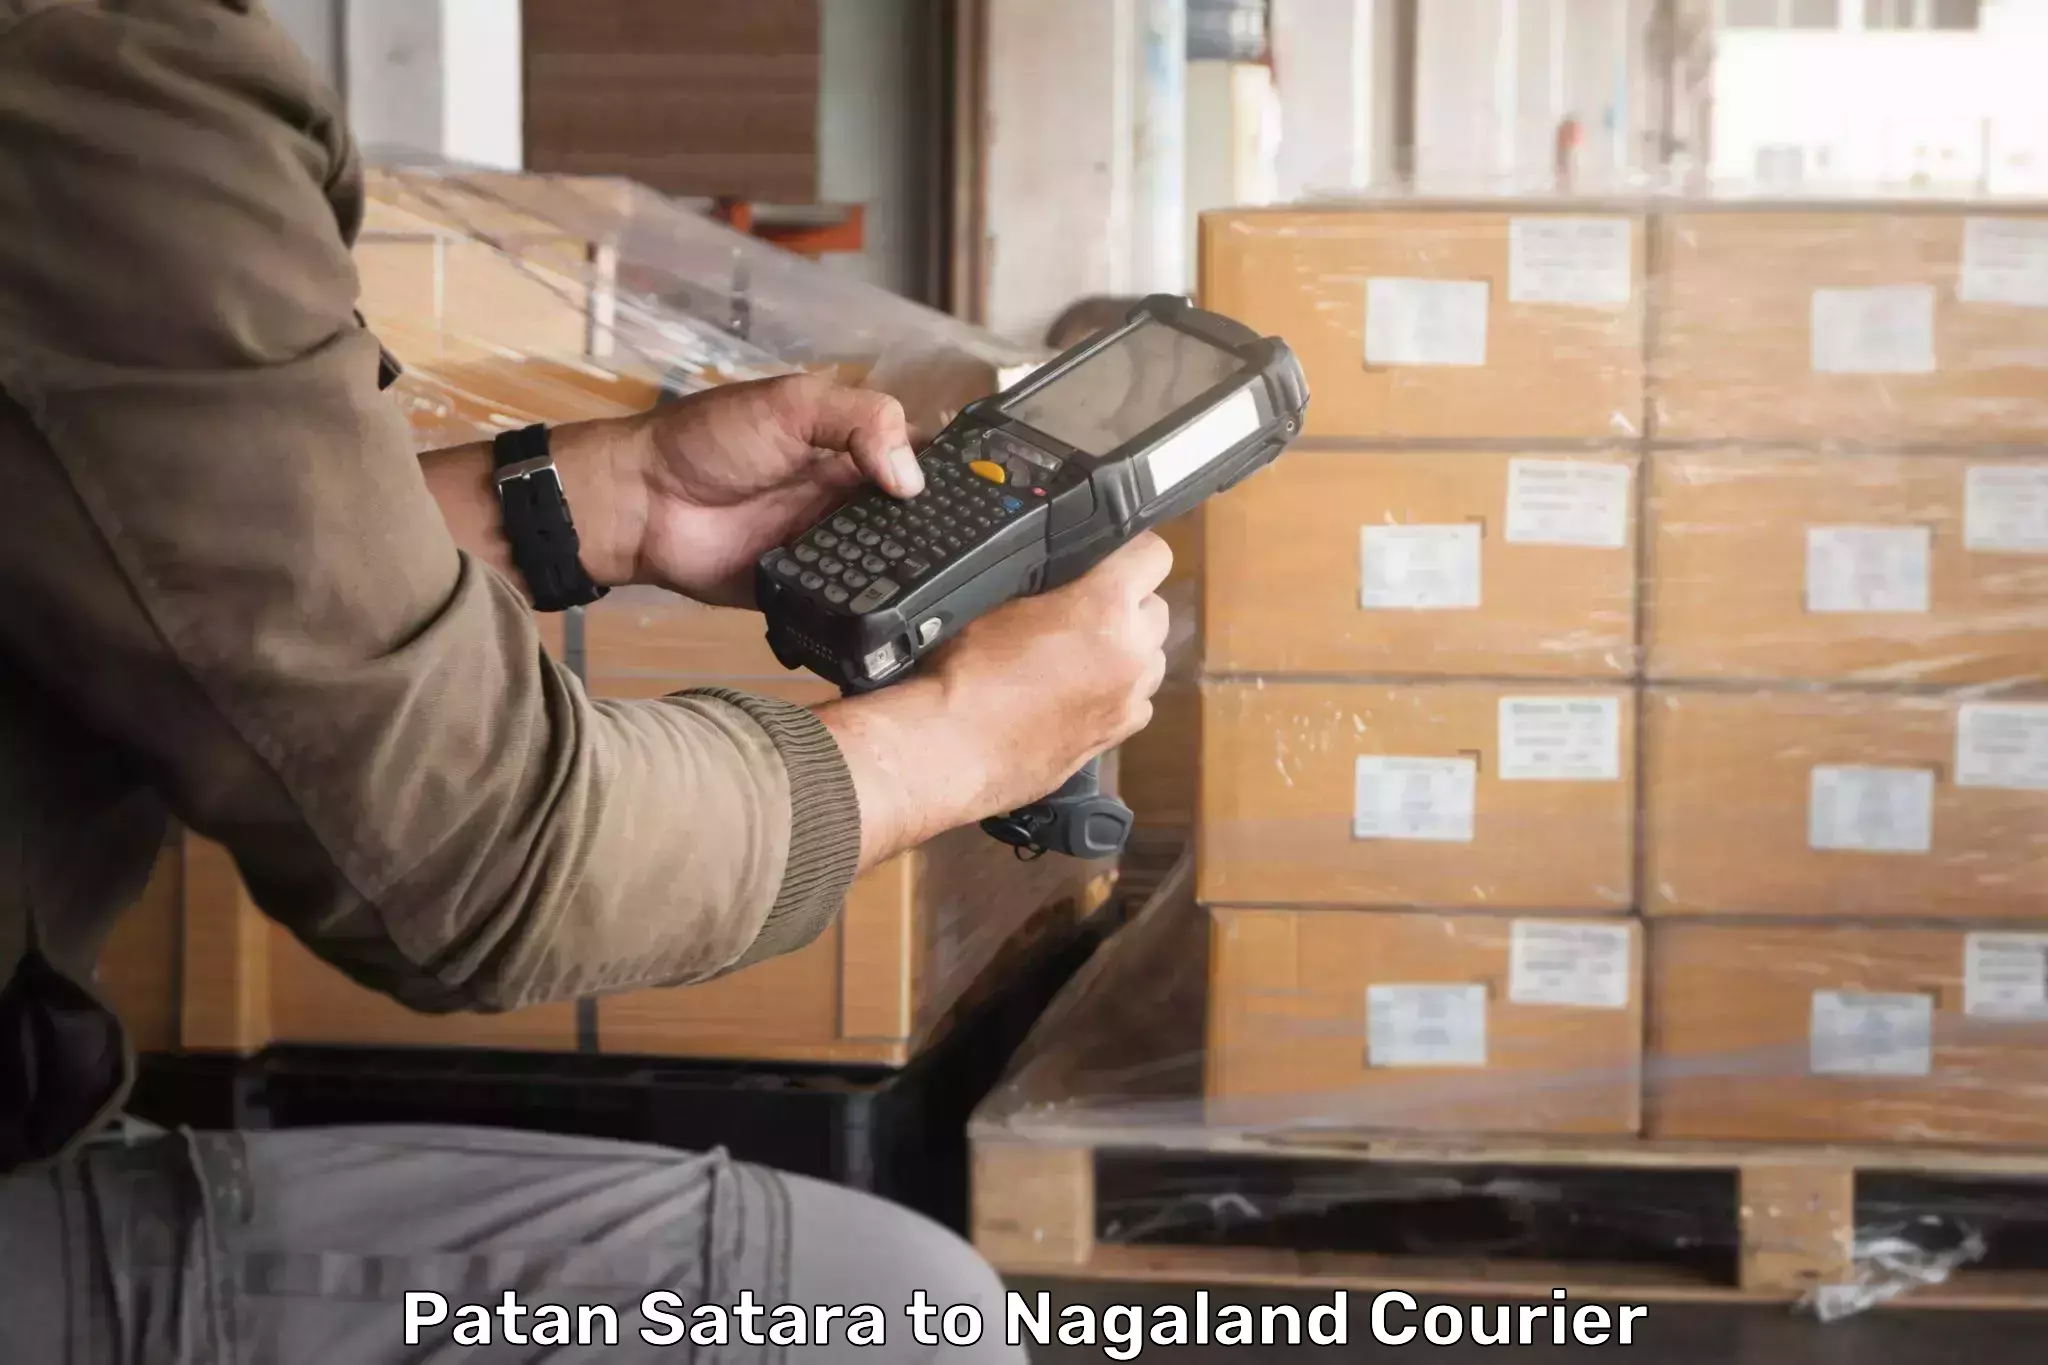 Global logistics network Patan Satara to Kohima